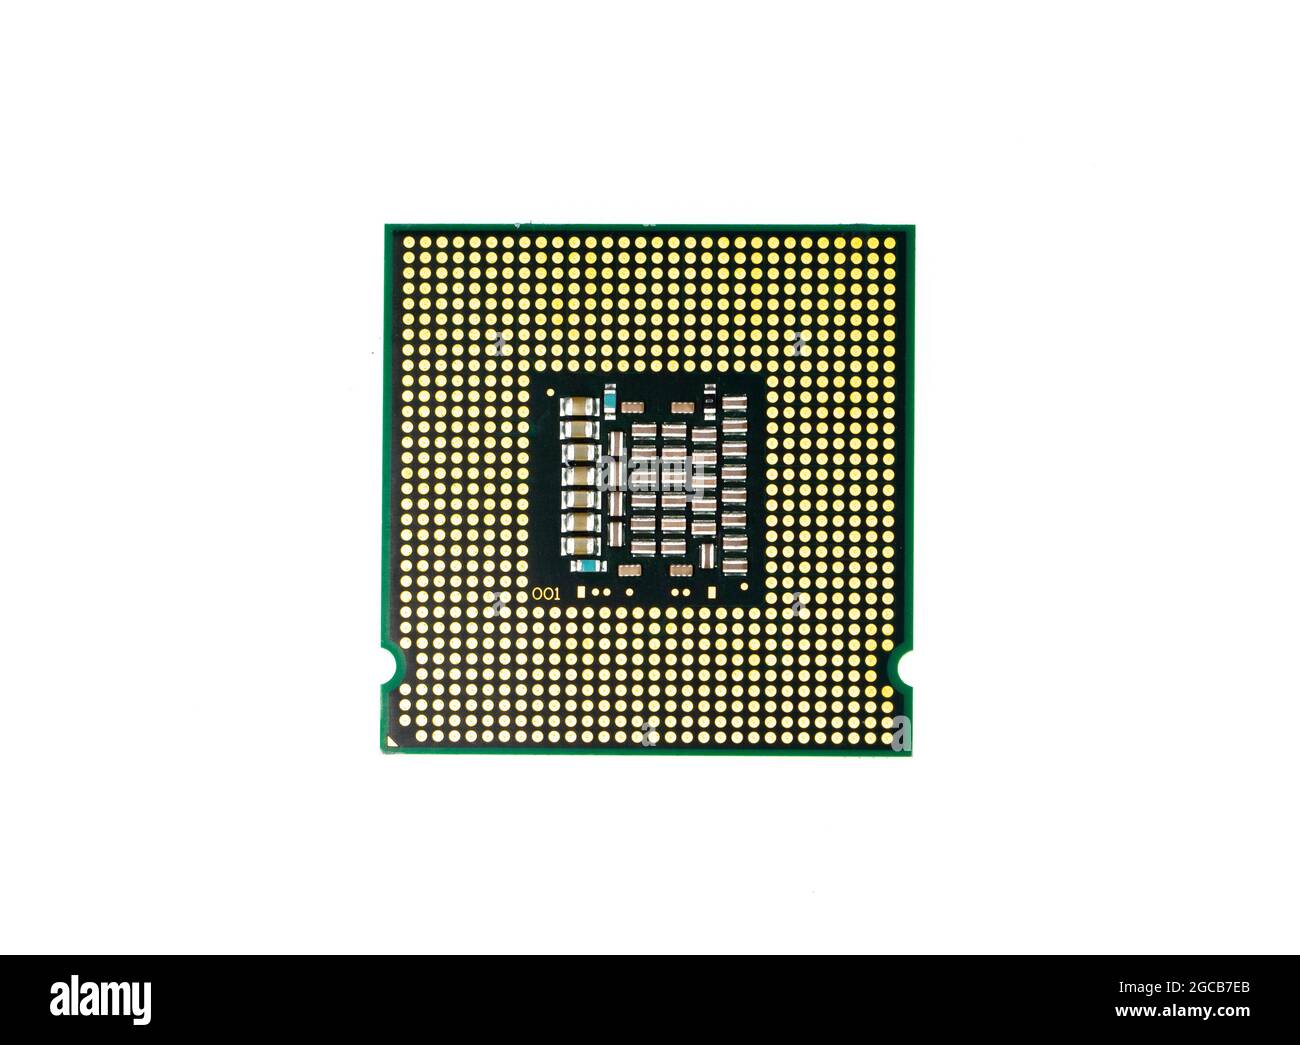 Immagine del chip del processore della cpu su sfondo bianco. Apparecchiature e hardware per computer. Unità di elaborazione centrale, microprocessore. Foto Stock